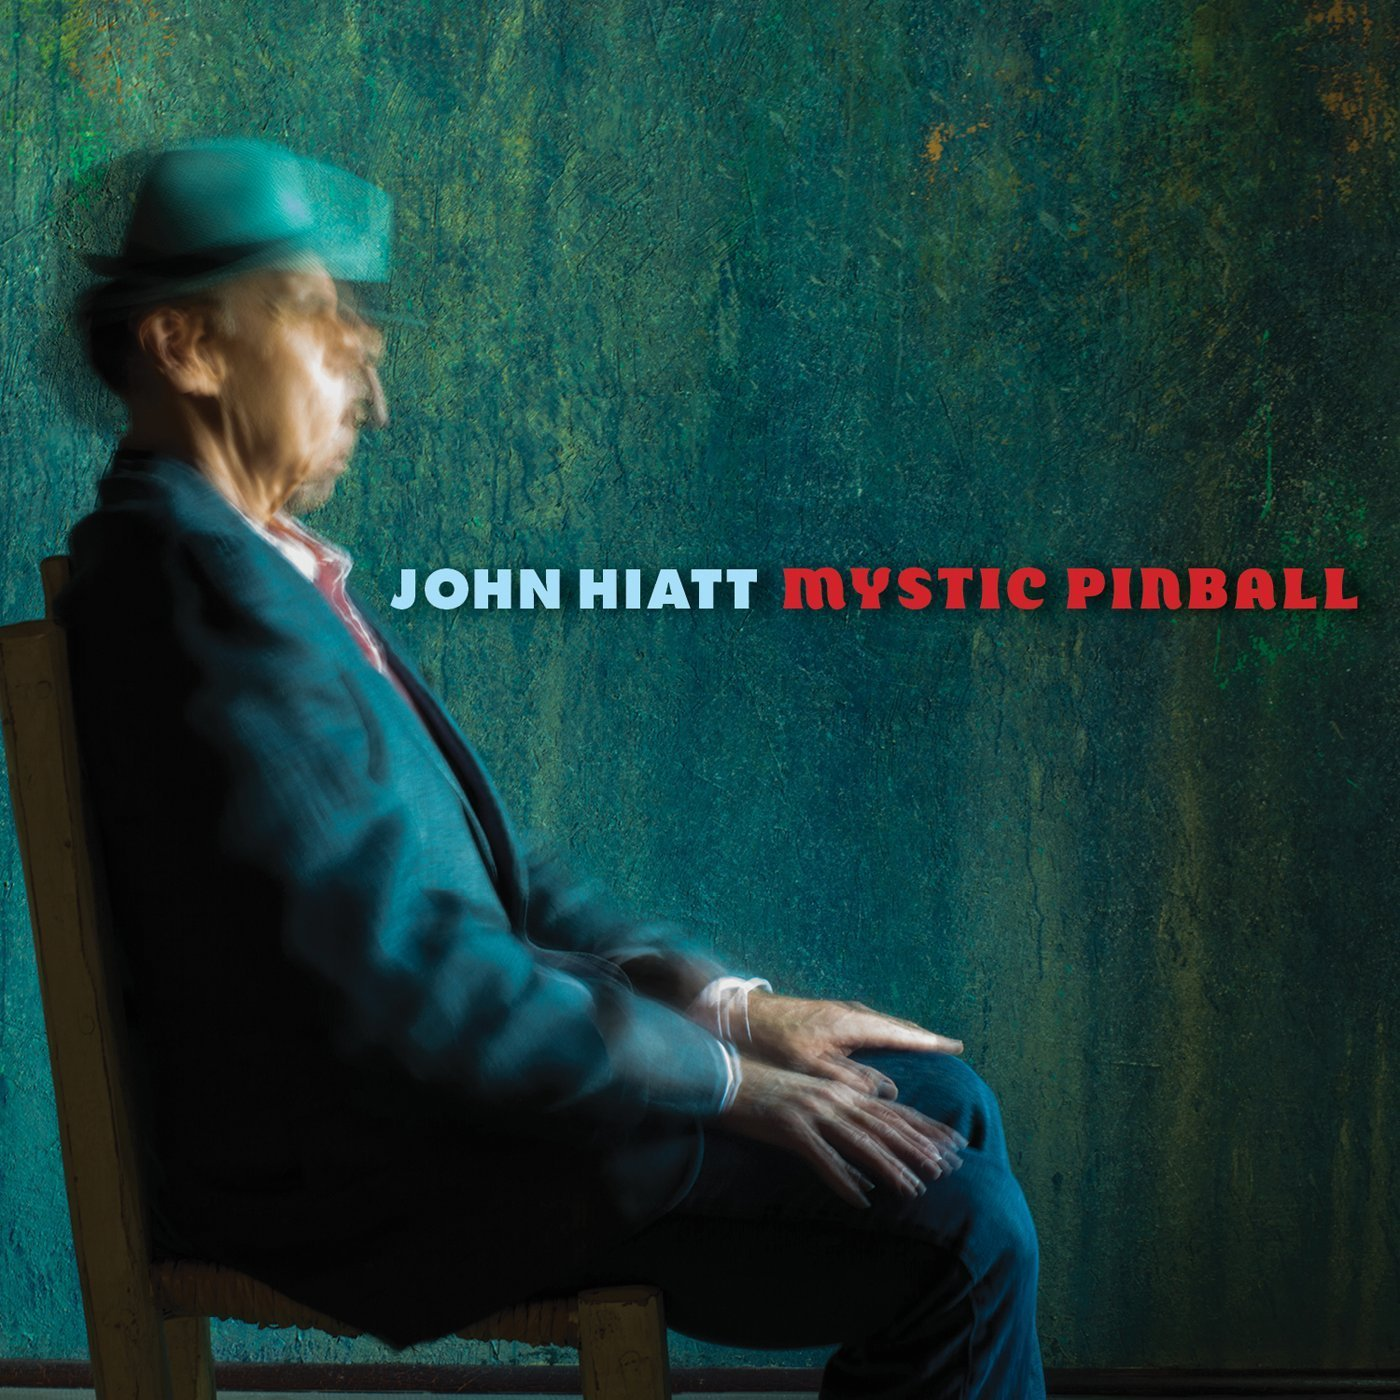 John - (Vinyl) Mystic Pinball Hiatt -